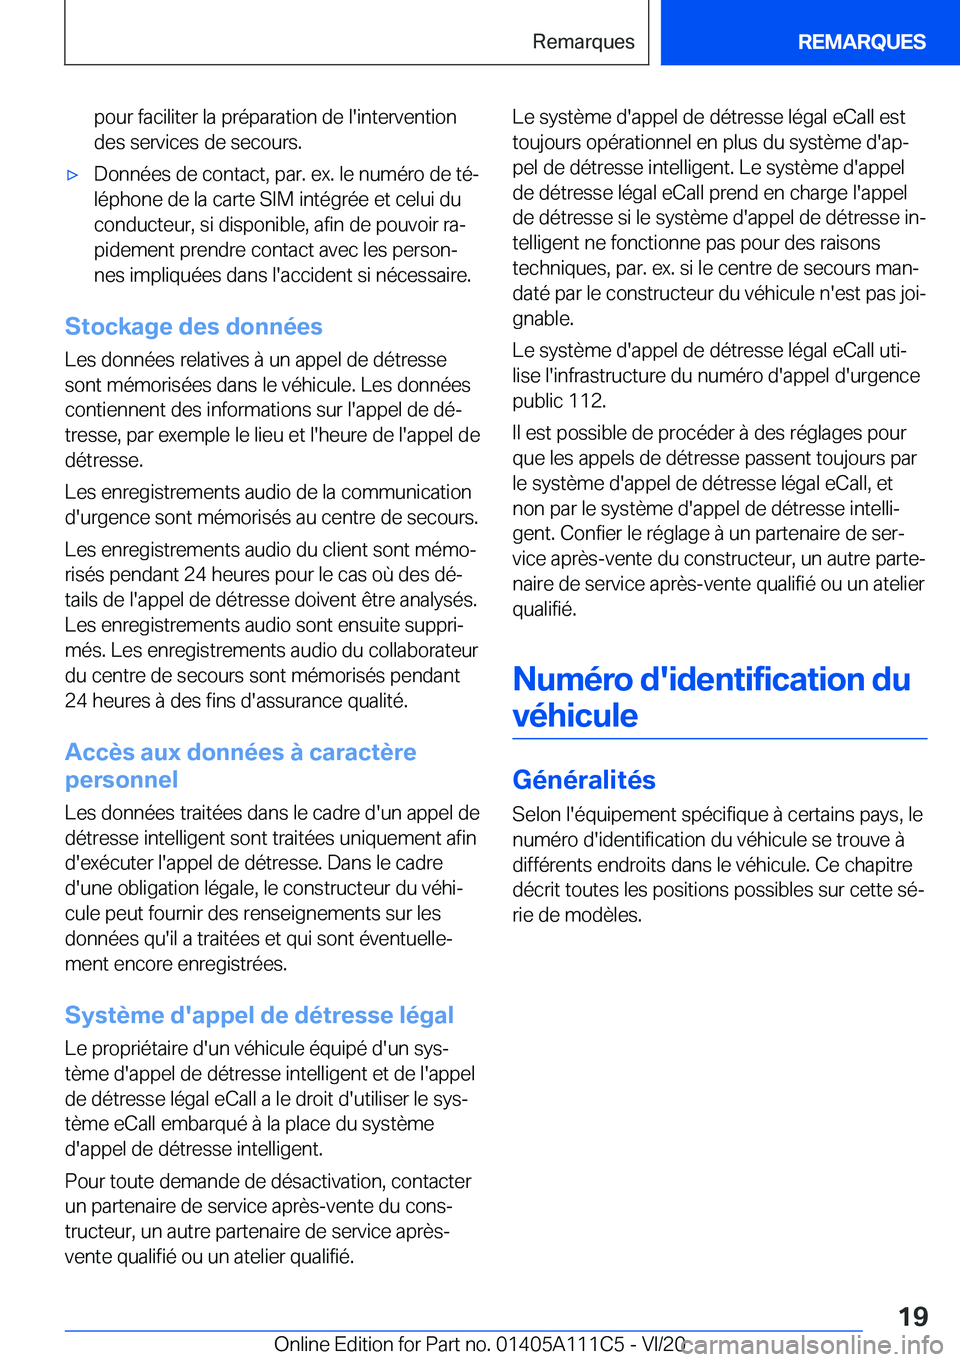 BMW 3 SERIES SEDAN PLUG-IN HYBRID 2021  Notices Demploi (in French) �p�o�u�r��f�a�c�i�l�i�t�e�r��l�a��p�r�é�p�a�r�a�t�i�o�n��d�e��l�'�i�n�t�e�r�v�e�n�t�i�o�n�d�e�s��s�e�r�v�i�c�e�s��d�e��s�e�c�o�u�r�s�.'x�D�o�n�n�é�e�s��d�e��c�o�n�t�a�c�t�,��p�a�r